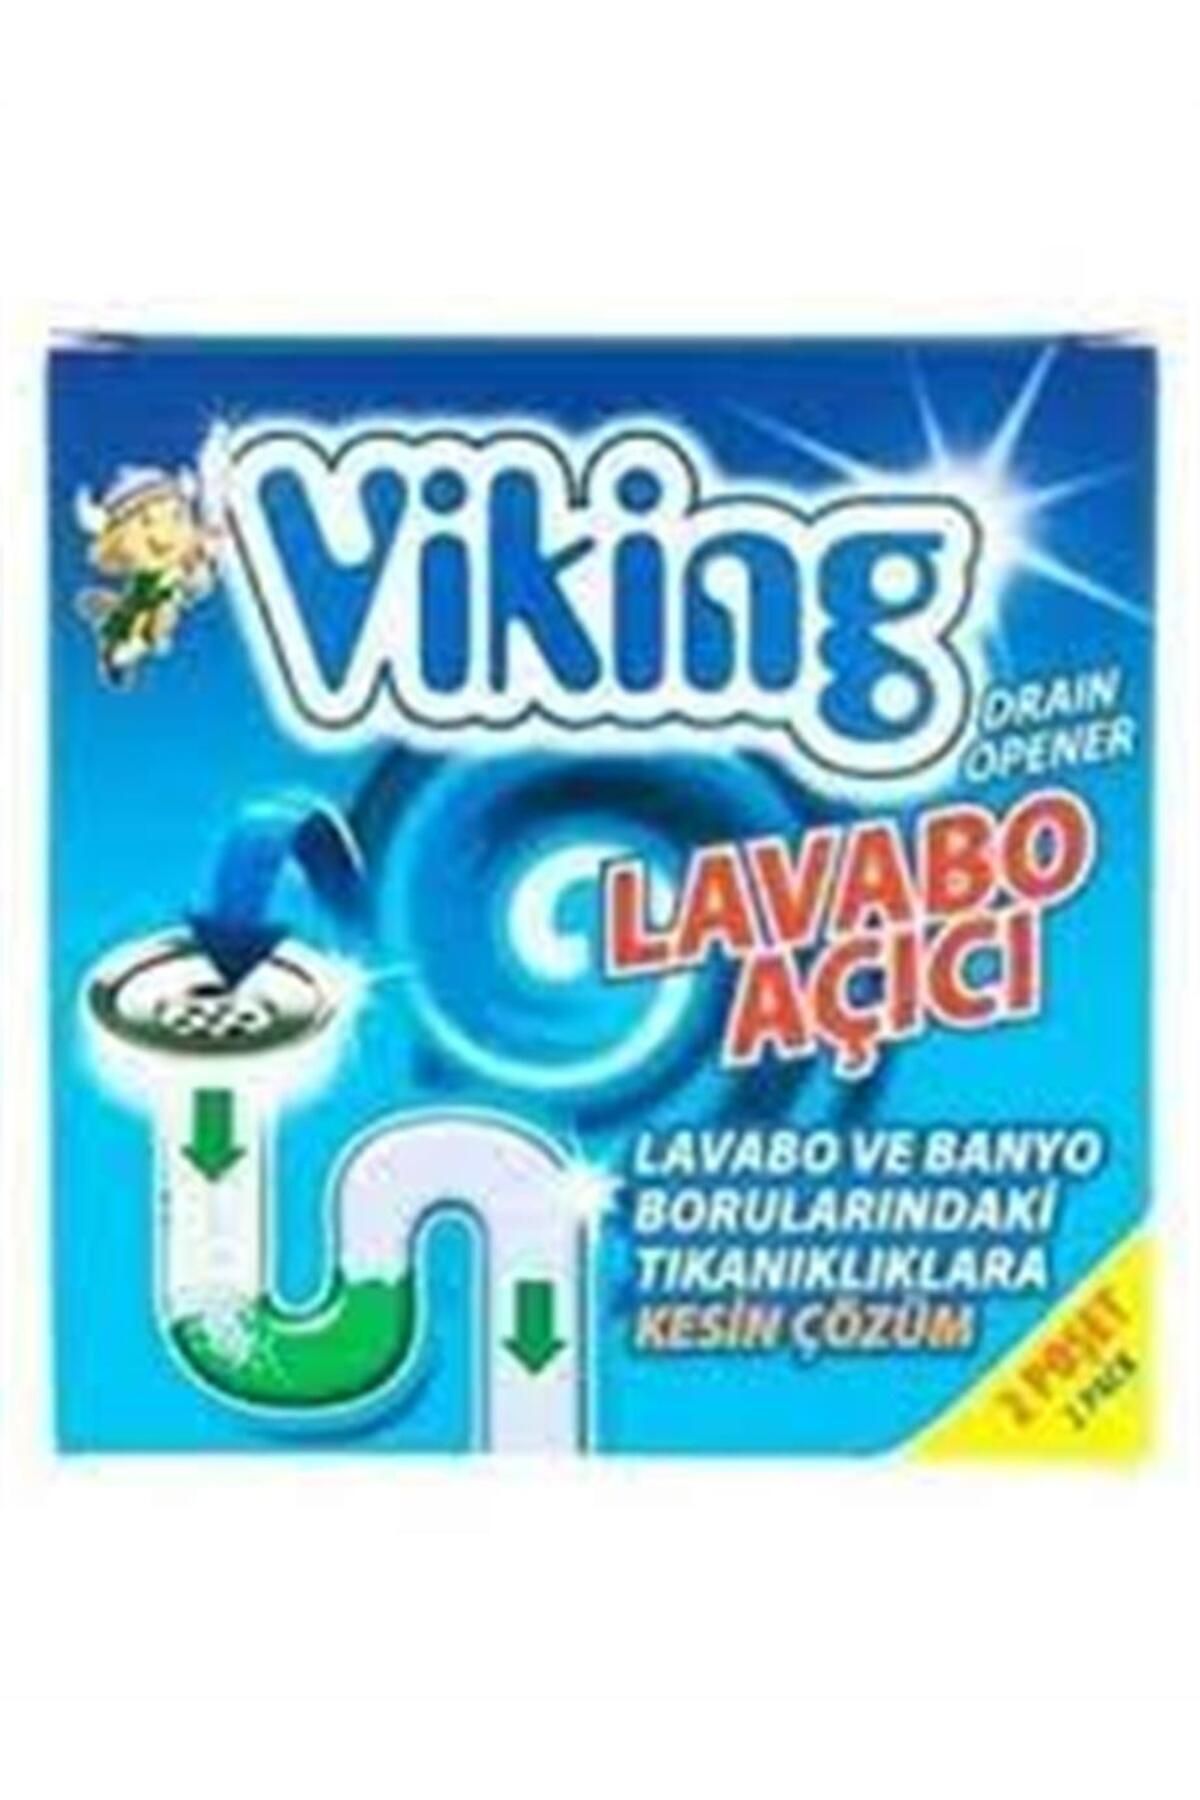 Viking VİKİNG LAVABO AÇICI 2X50 G